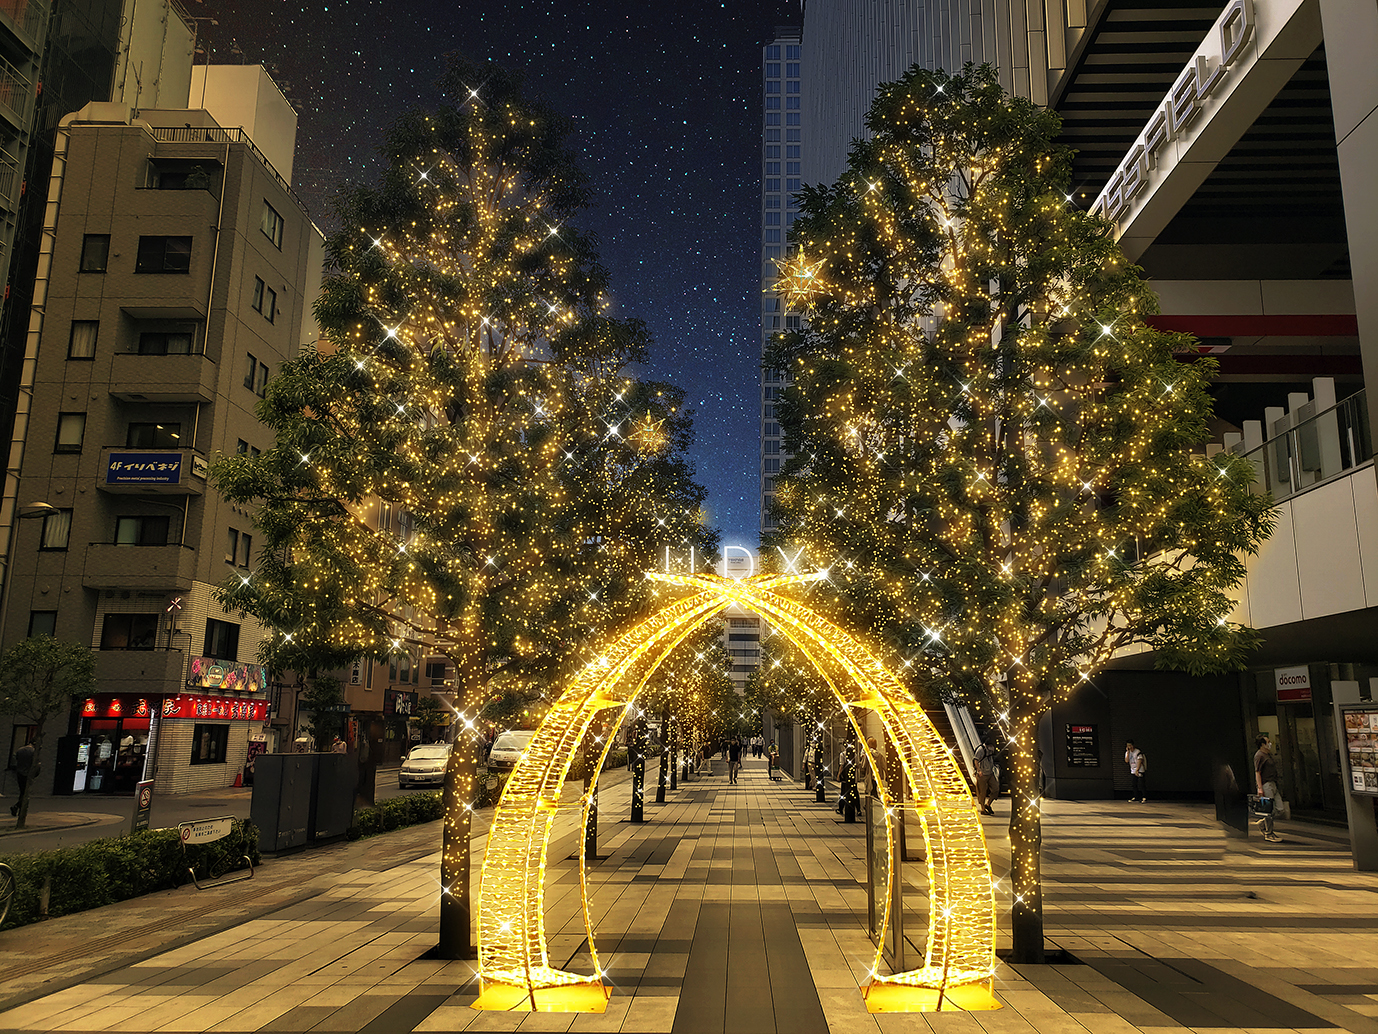 “冬の風物詩”秋葉原の街を彩る『UDX Illumination 2022』が
11月5日から12月25日まで開催